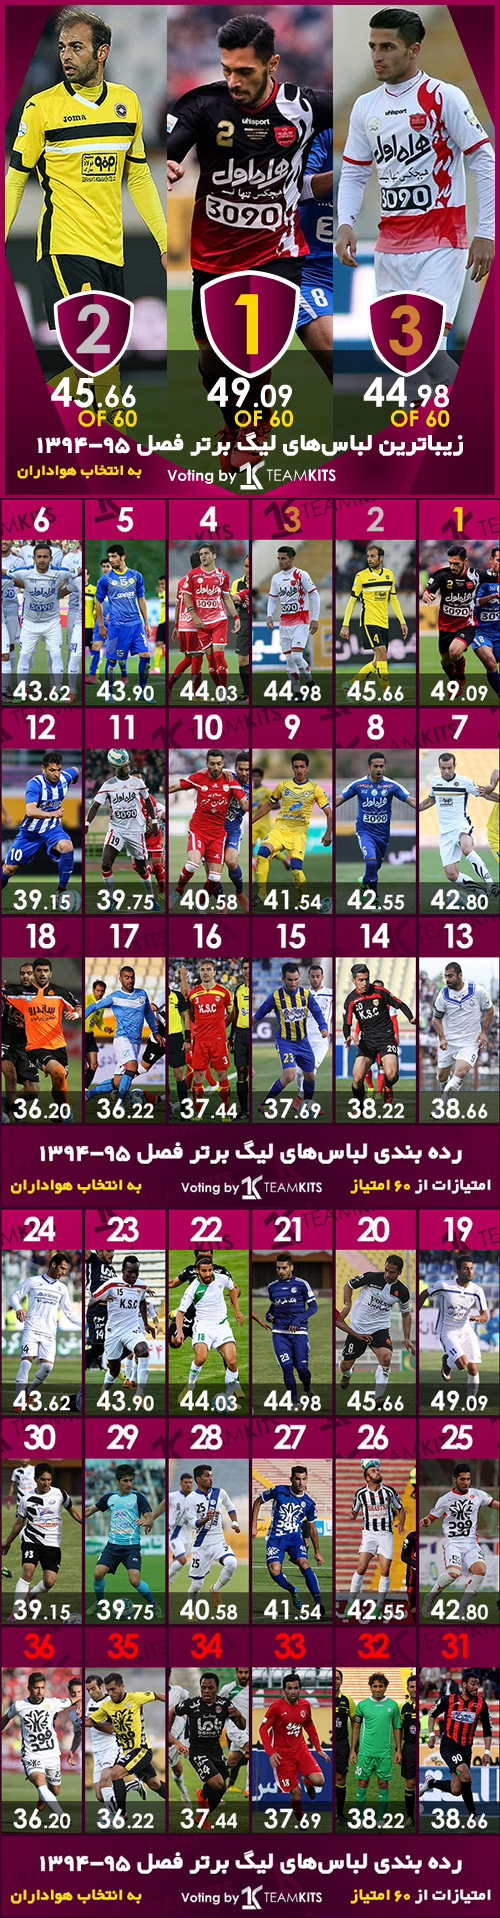 نتایج نظرسنجی زیباترین کیت جام خلیج فارس فصل 94 - 95 (سایت تیم کیتز)